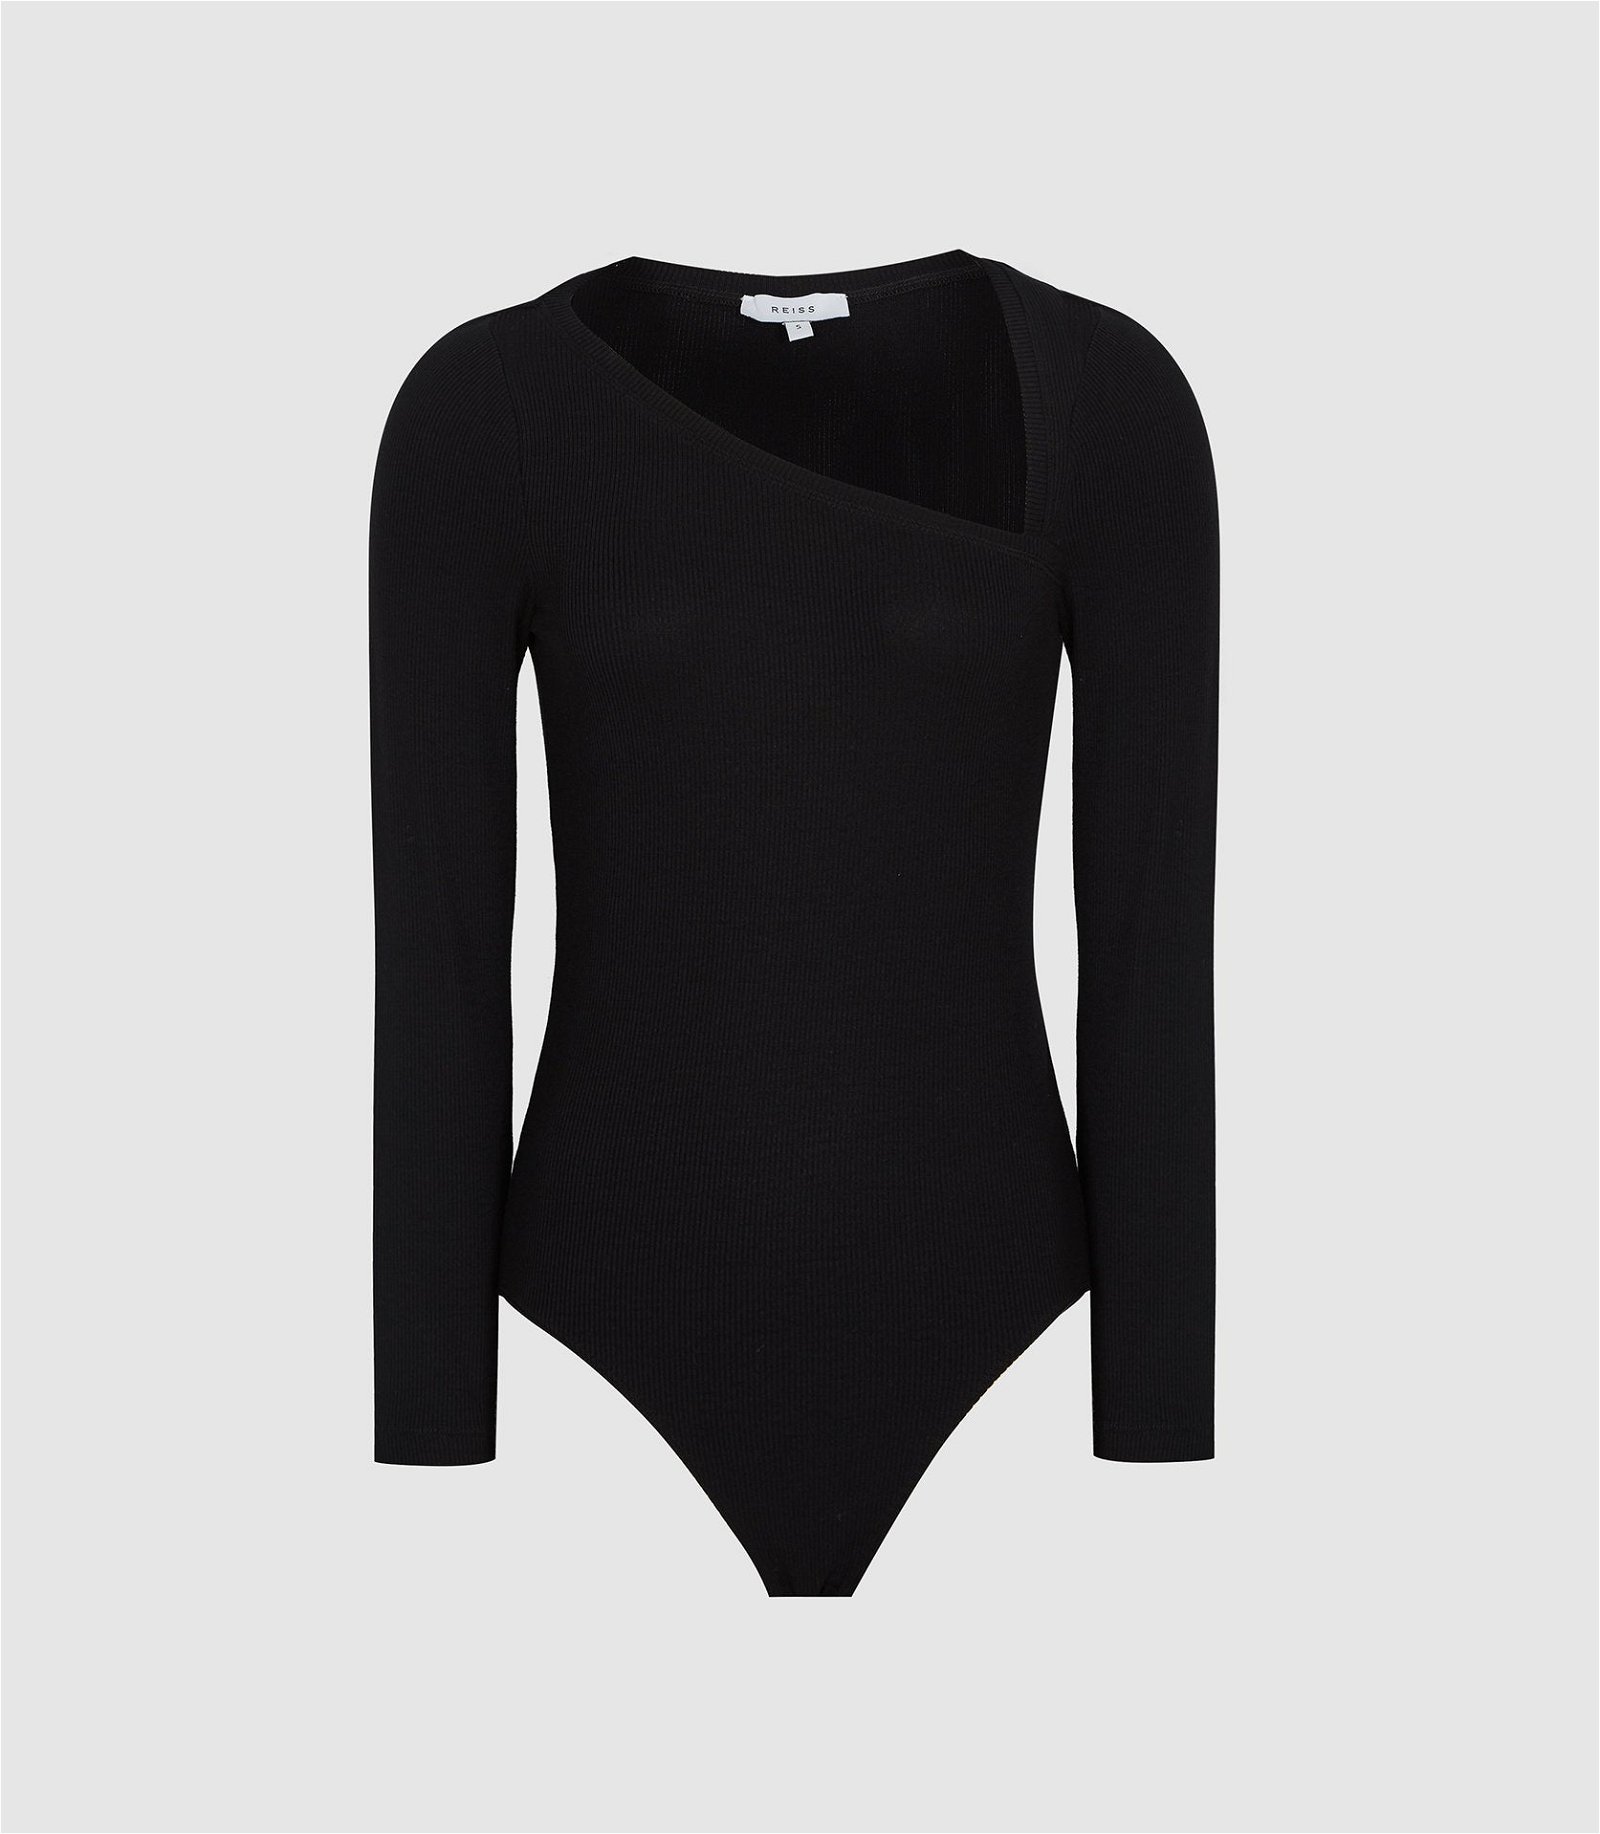 REISS Stevie Asymmetric Neckline Bodysuit in Black